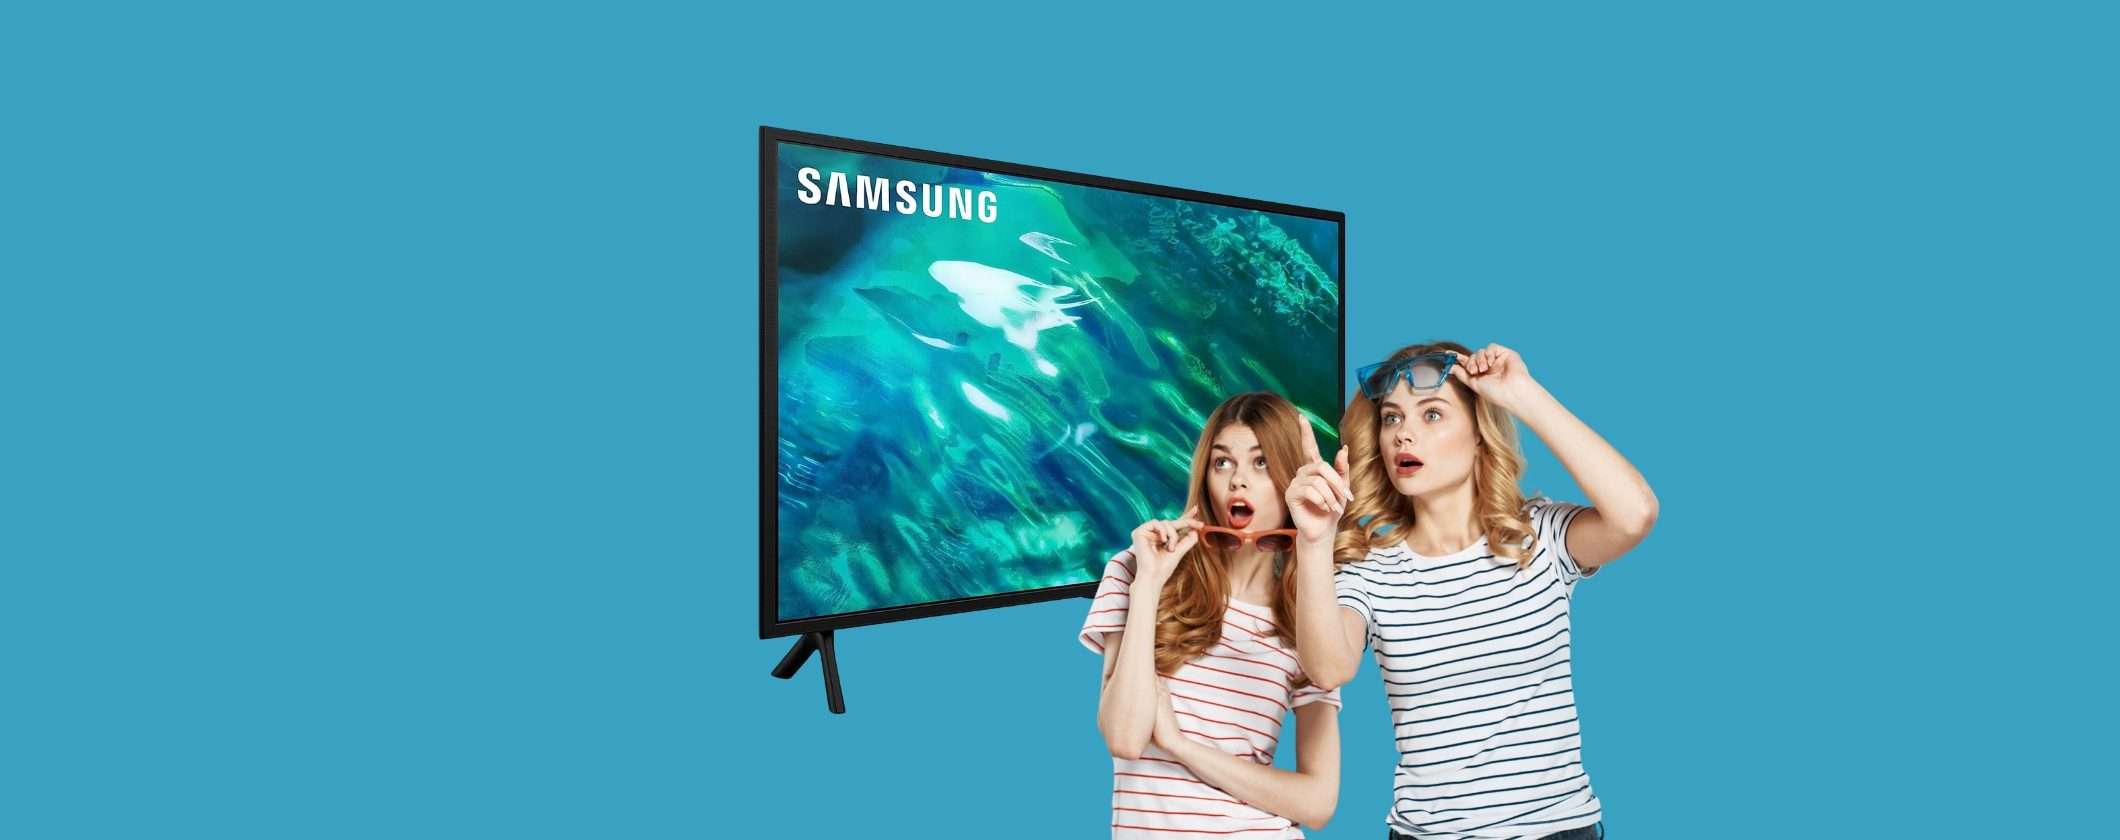 Samsung TV QLED: qualità top a prezzo LOW COST, solo per oggi